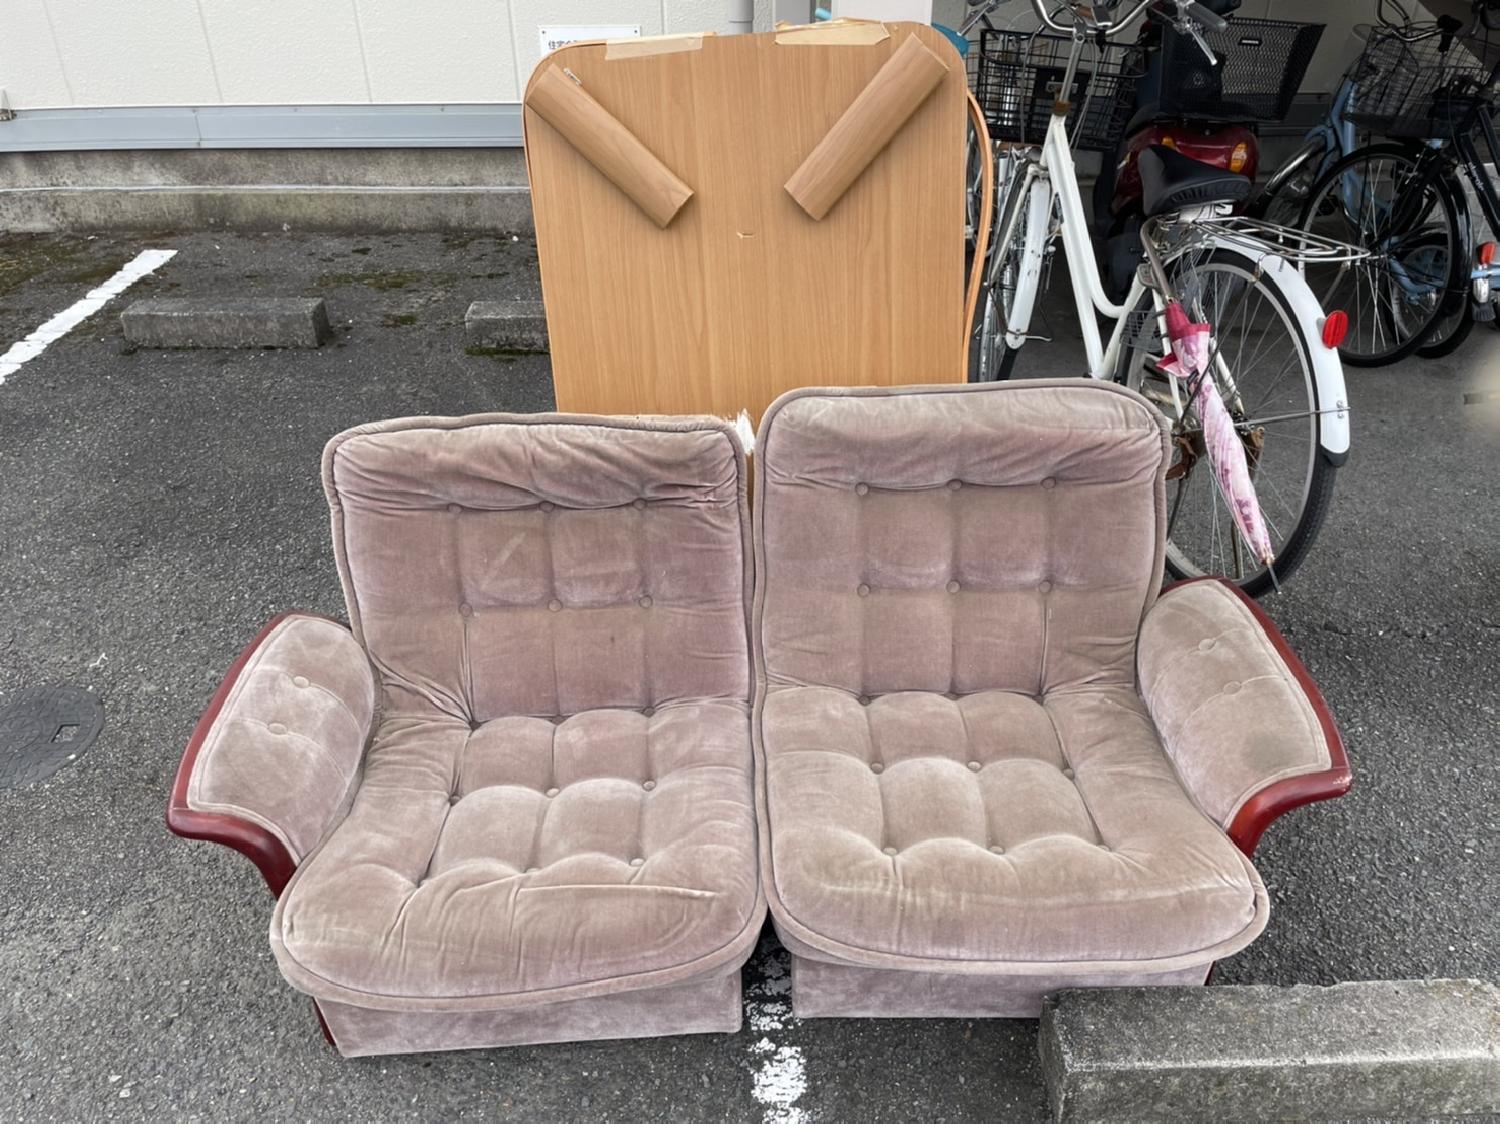  奈良県天理市のお客様よりソファーとローテーブルの回収のご依頼